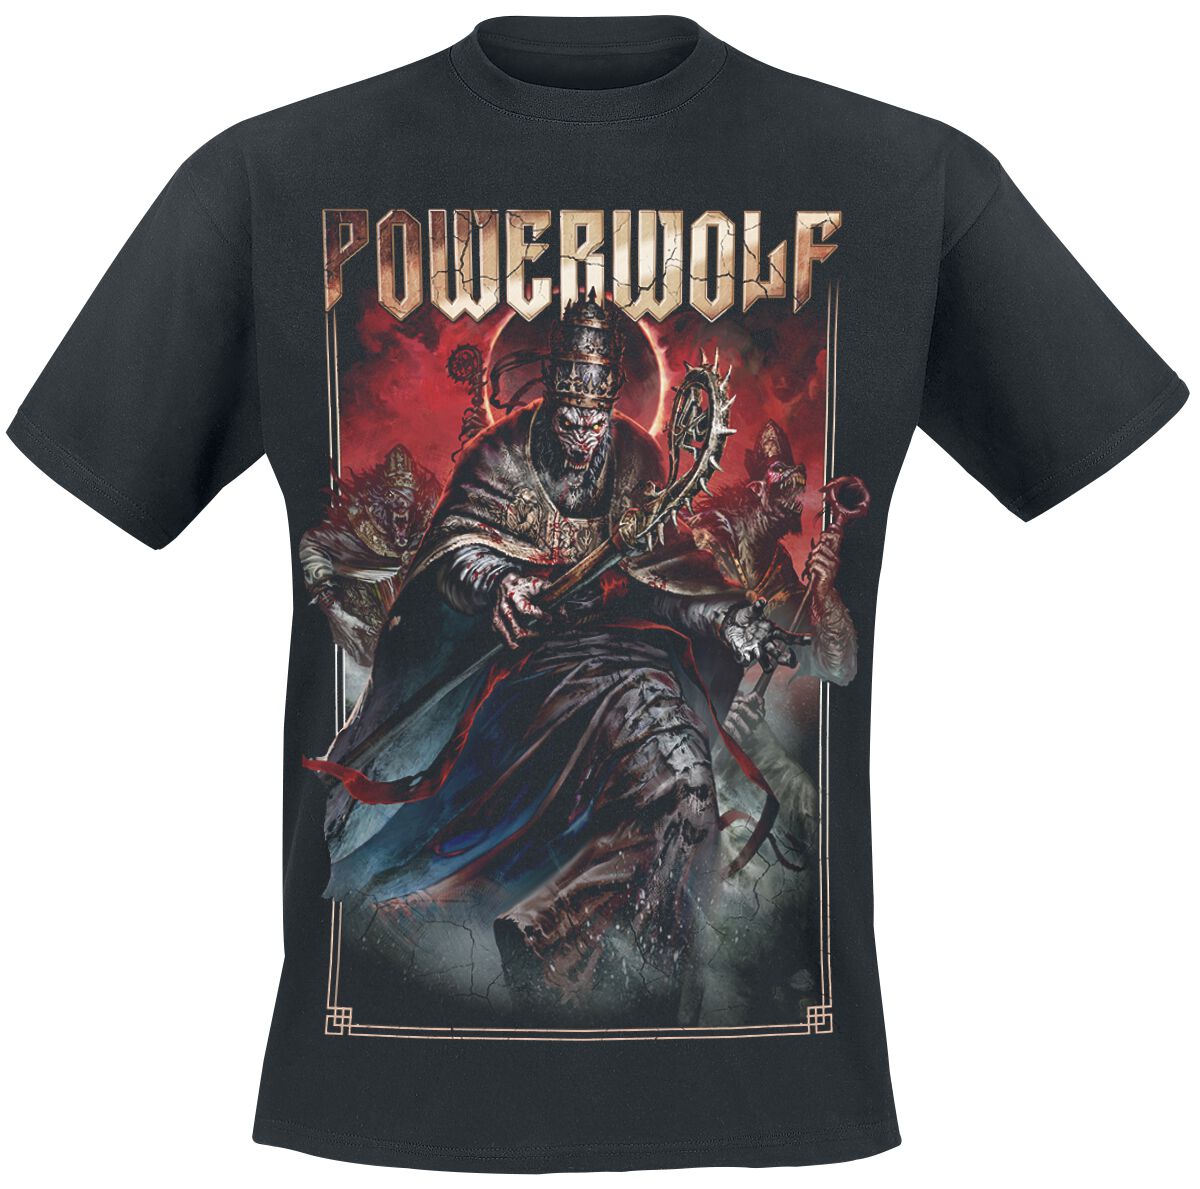 Powerwolf T-Shirt - Blood Of The Saints - S bis 3XL - für Männer - Größe 3XL - schwarz  - Lizenziertes Merchandise!